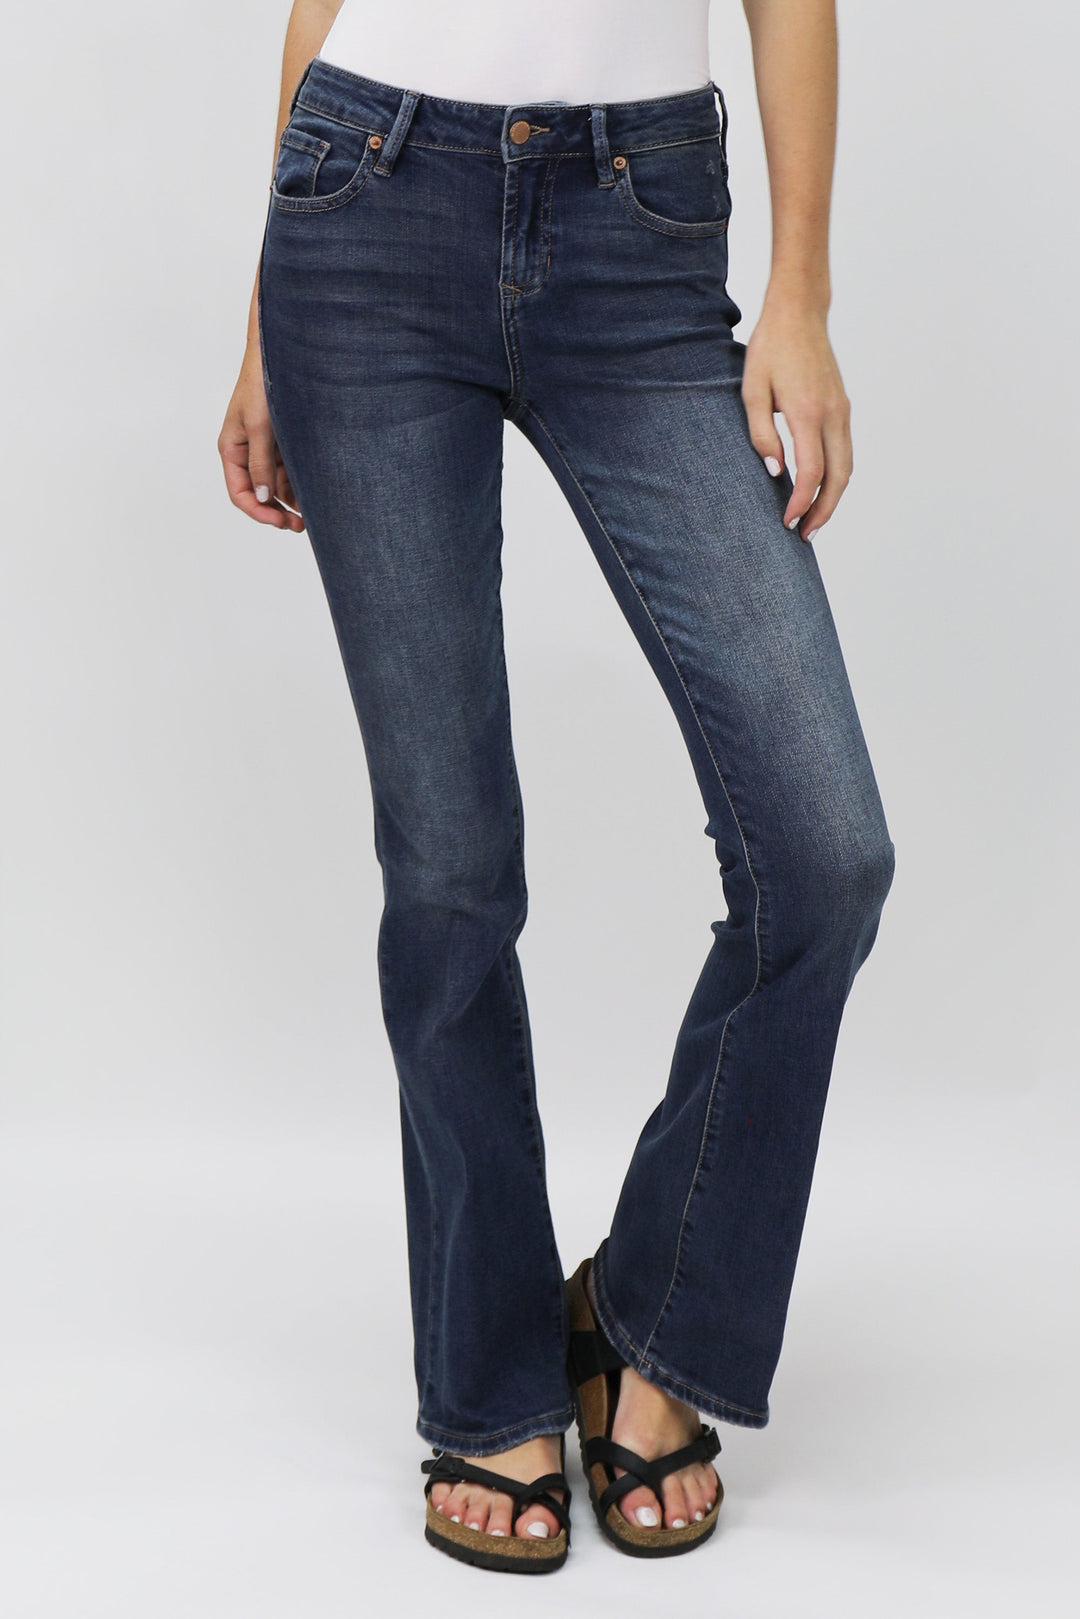 image of a female model wearing a jaxtyn high rise bootcut jeans millbridge JEANS